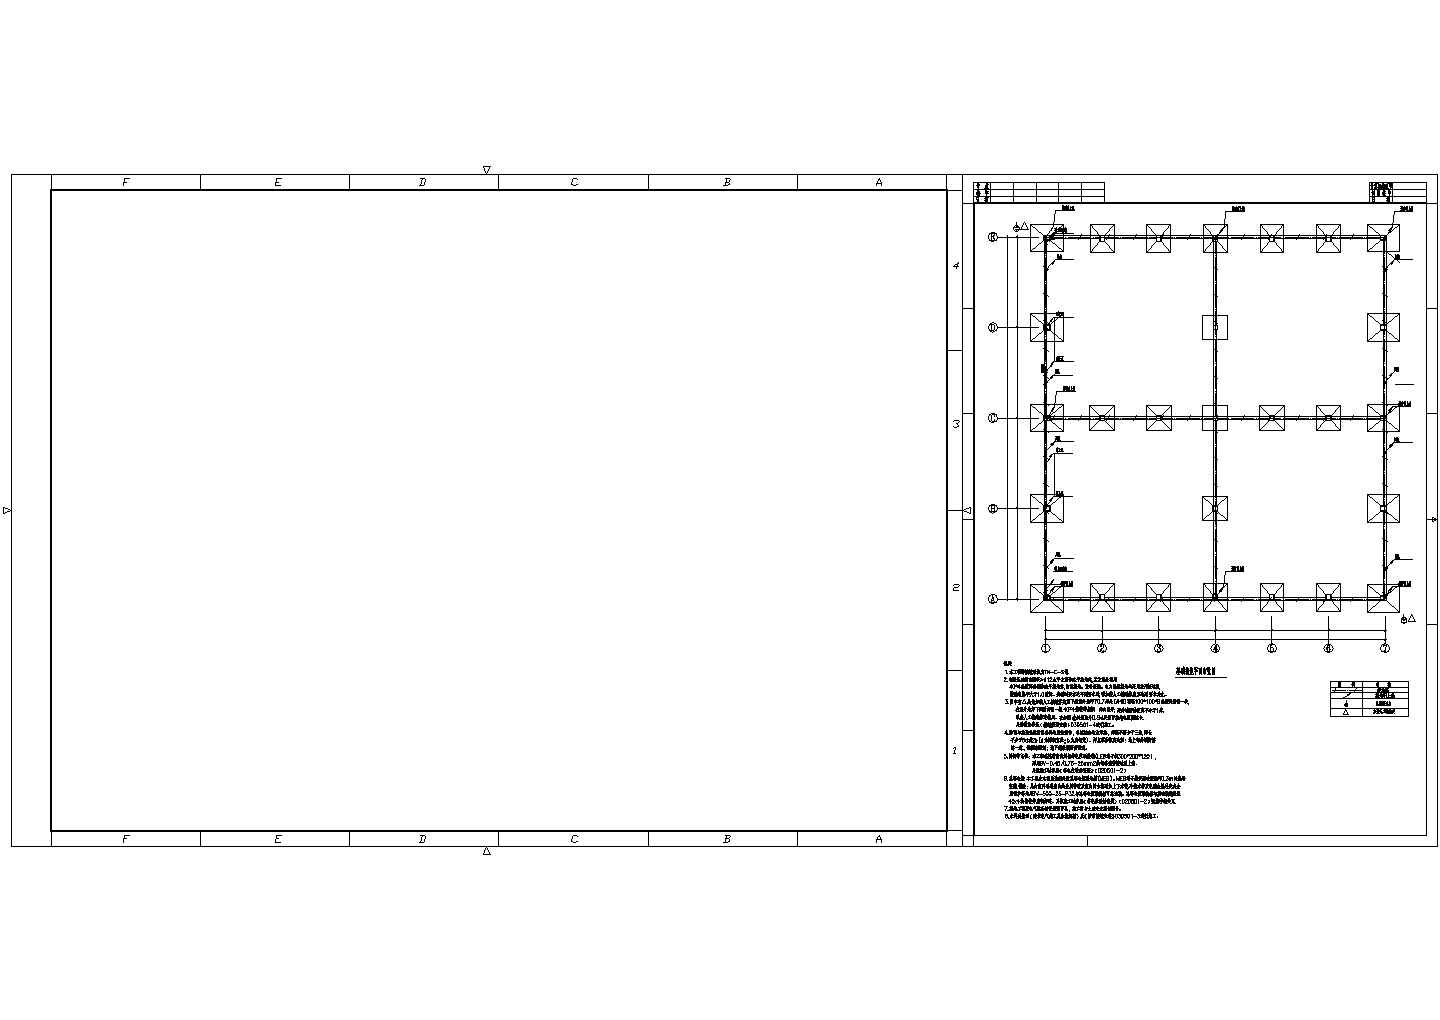 某地区甲类仓库电气照明配电系统CAD设计施工图